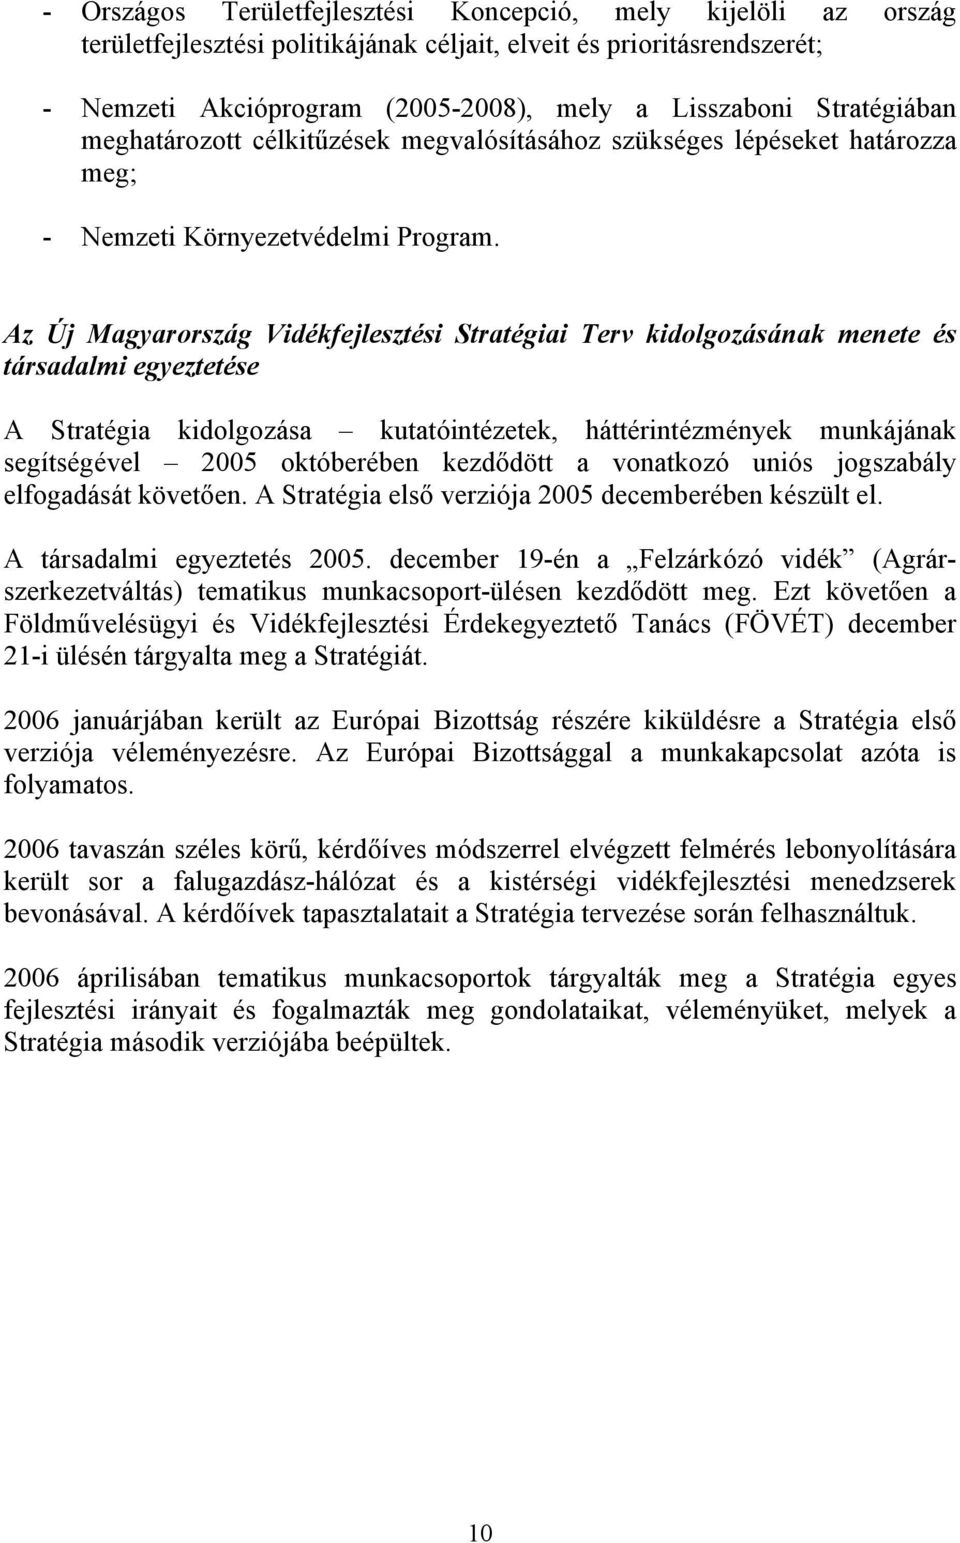 Az Új Magyarország Vidékfejlesztési Stratégiai Terv kidolgozásának menete és társadalmi egyeztetése A Stratégia kidolgozása kutatóintézetek, háttérintézmények munkájának segítségével 2005 októberében